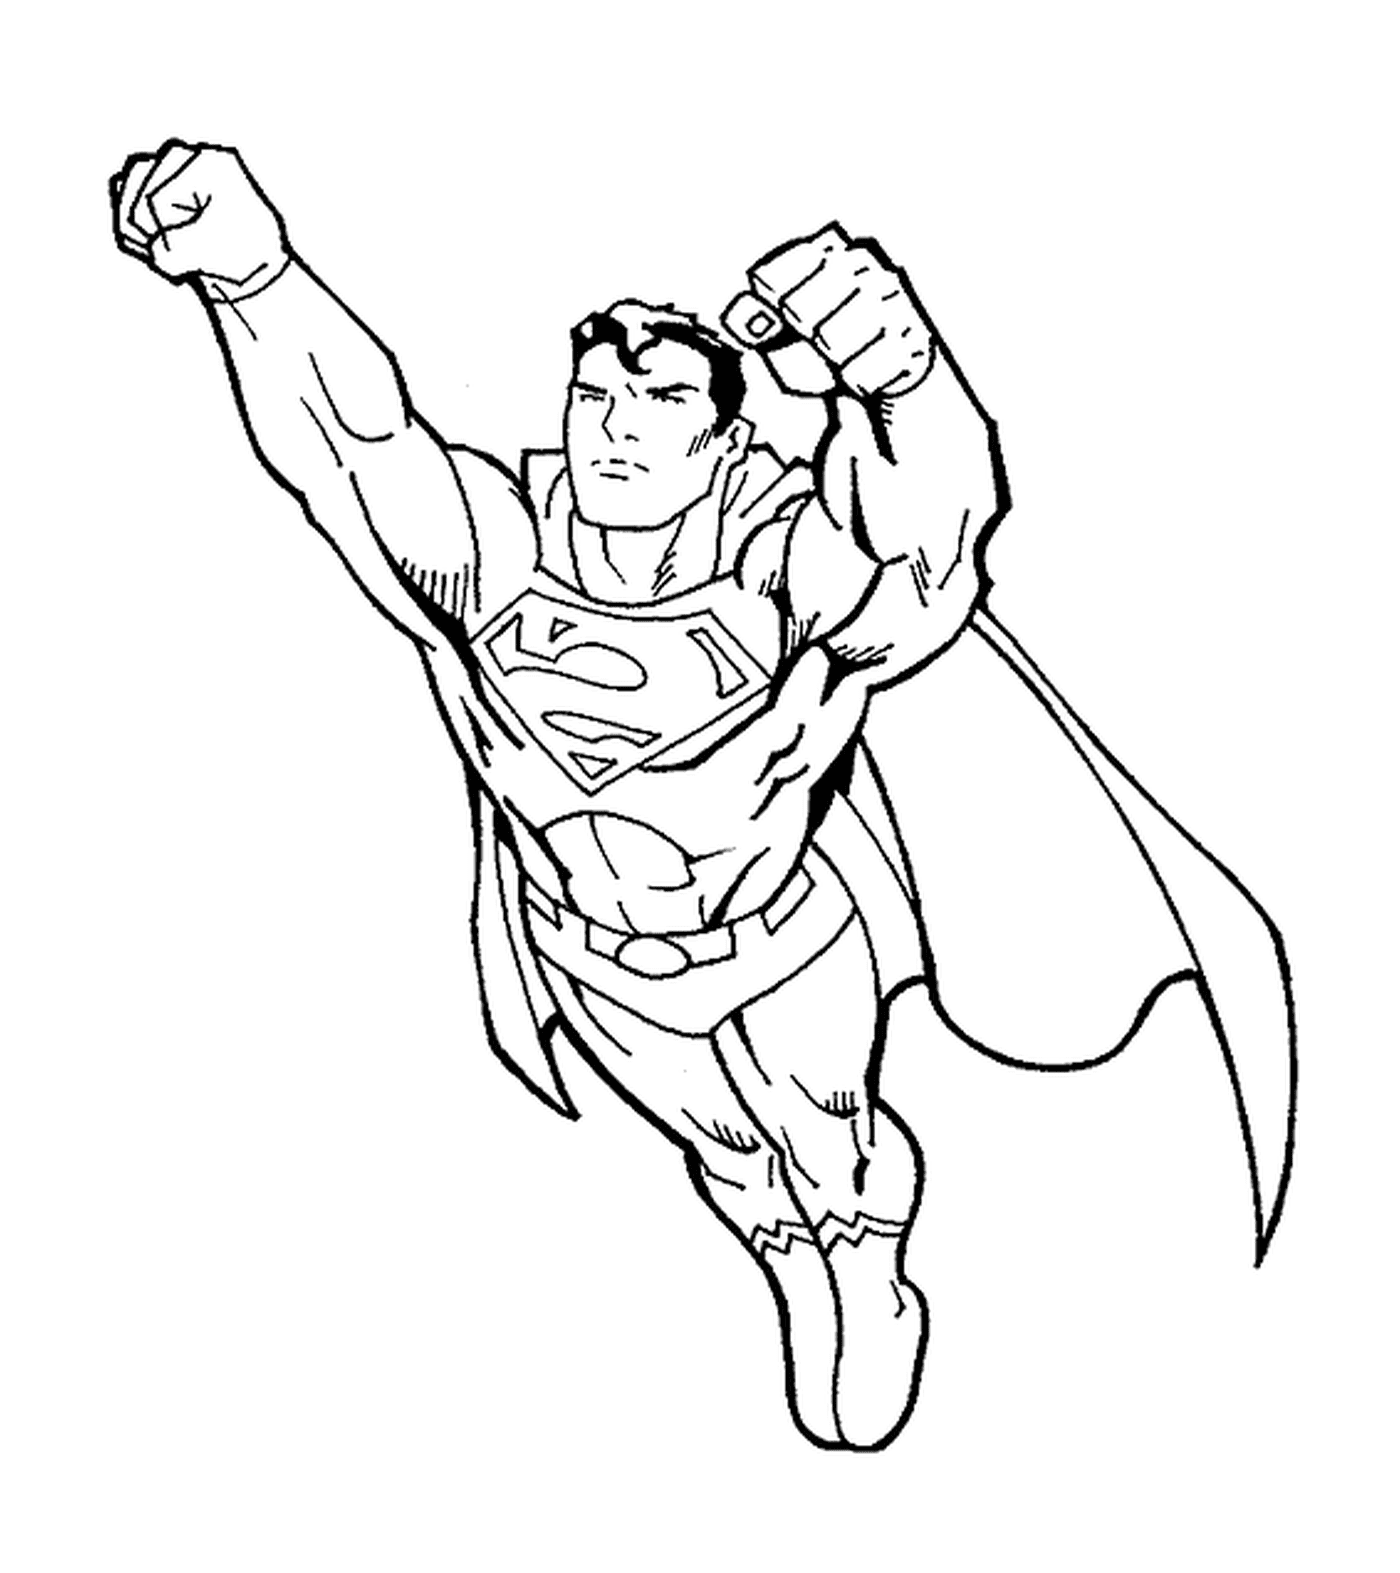  Superman, Fäuste nach vorne 